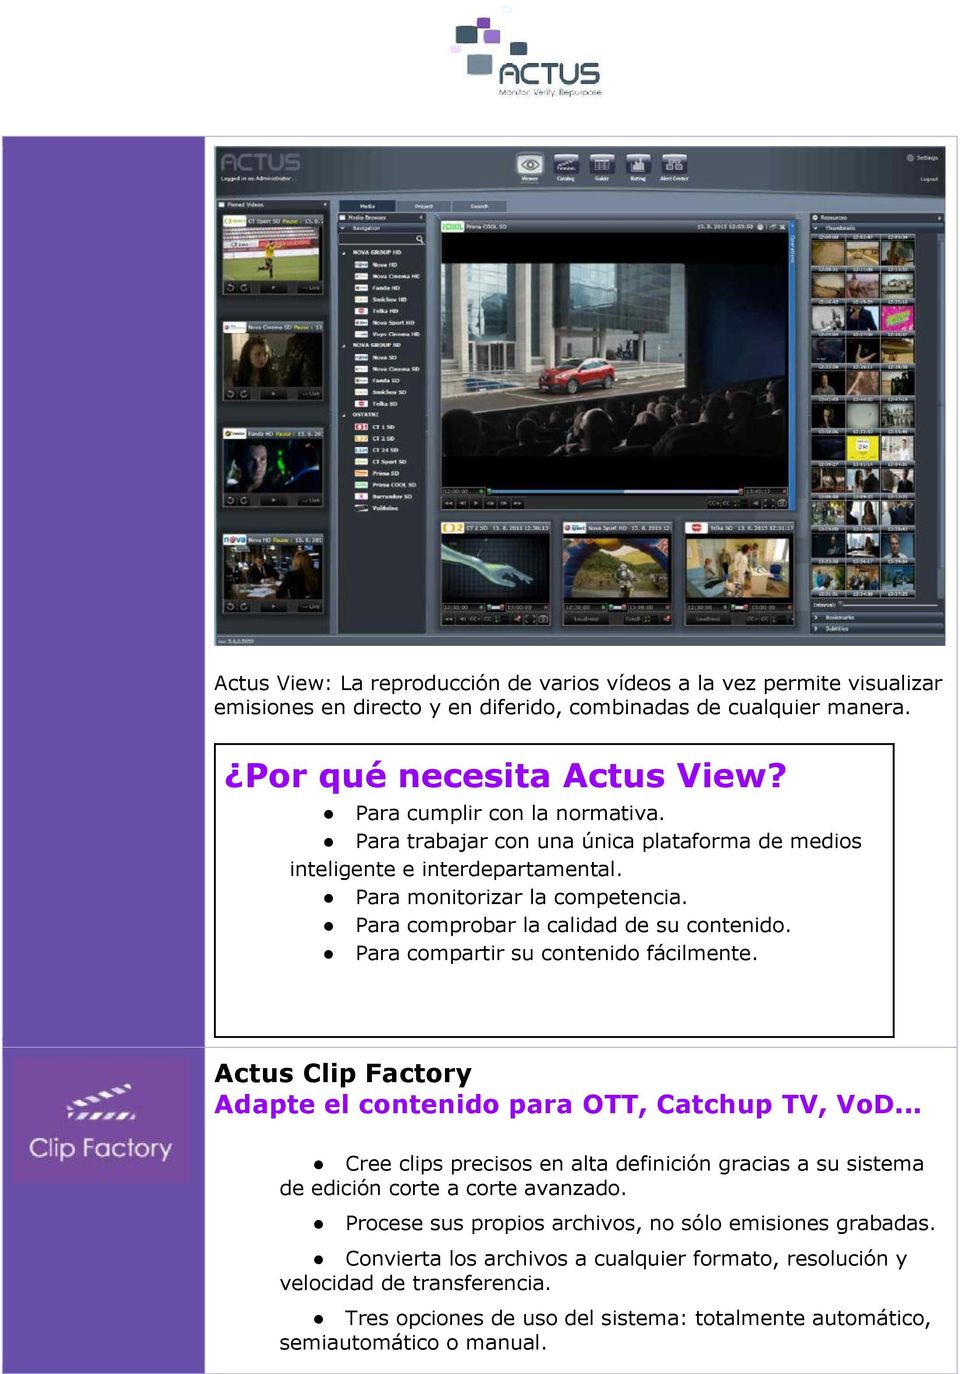 Para compartir su contenido fácilmente. Actus Clip Factory Adapte el contenido para OTT, Catchup TV, VoD.